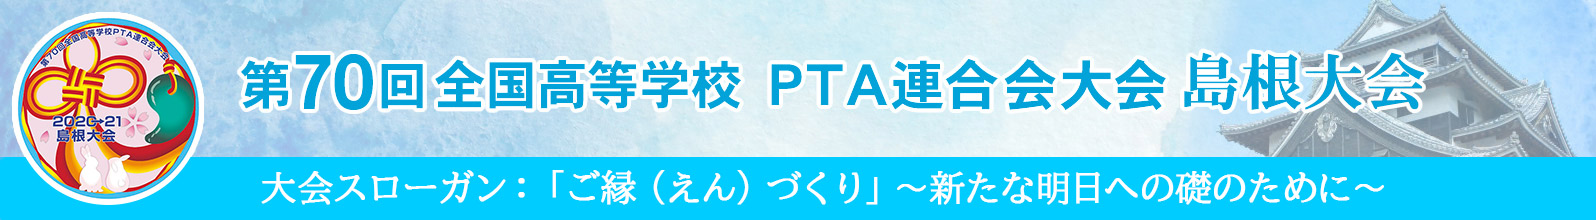 島根県高等学校PTA連合会全国大会